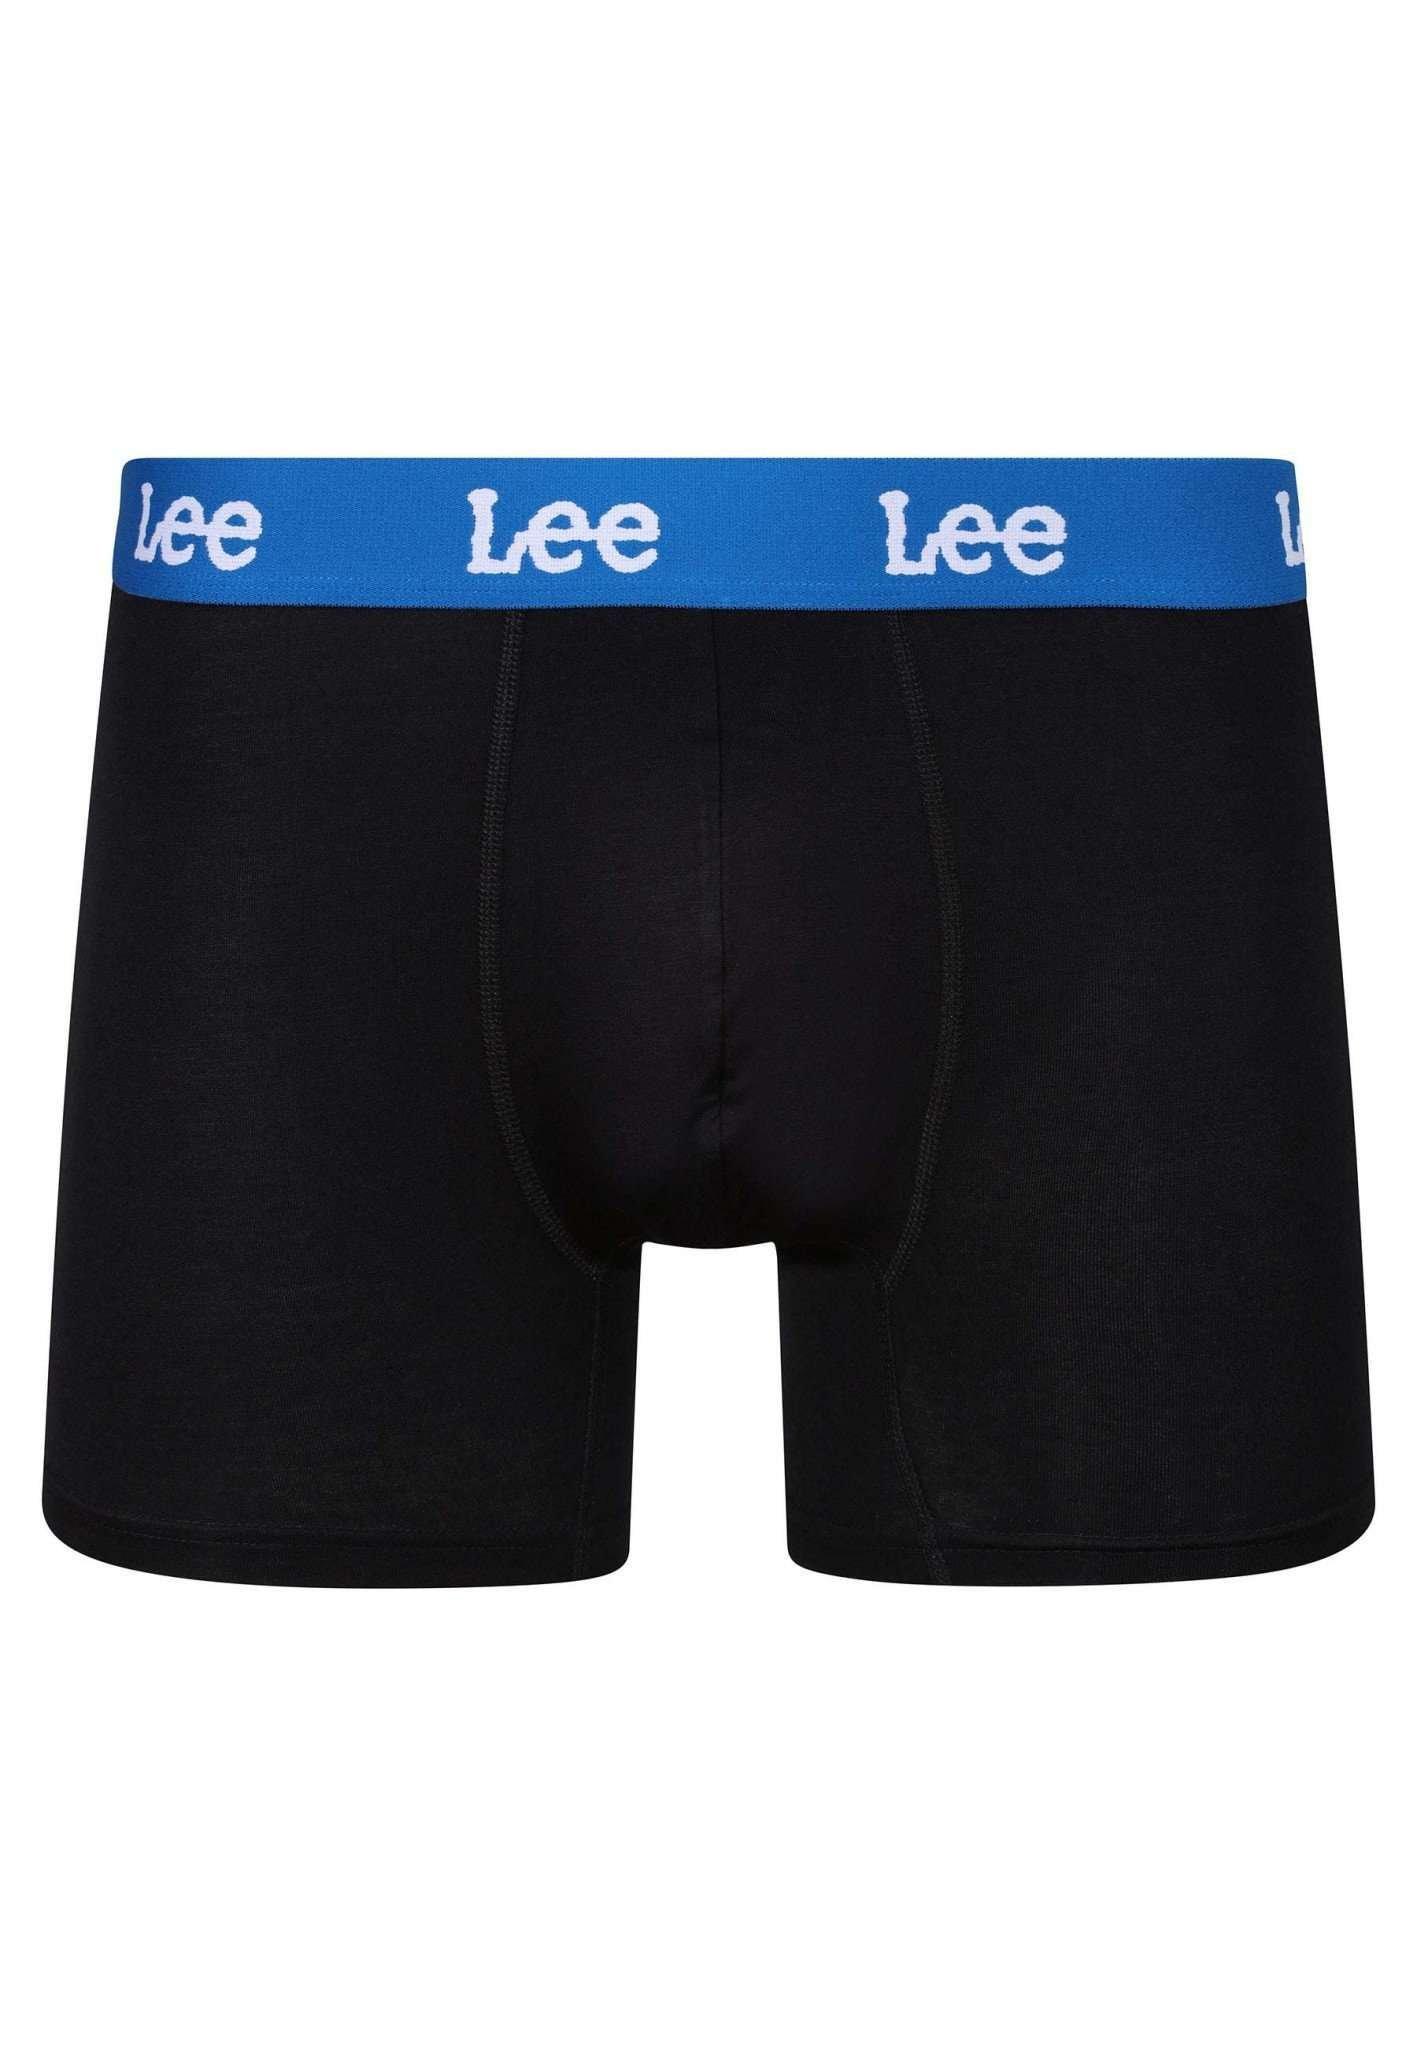 Lee  Panties 3 Pack Trunks Durkin 